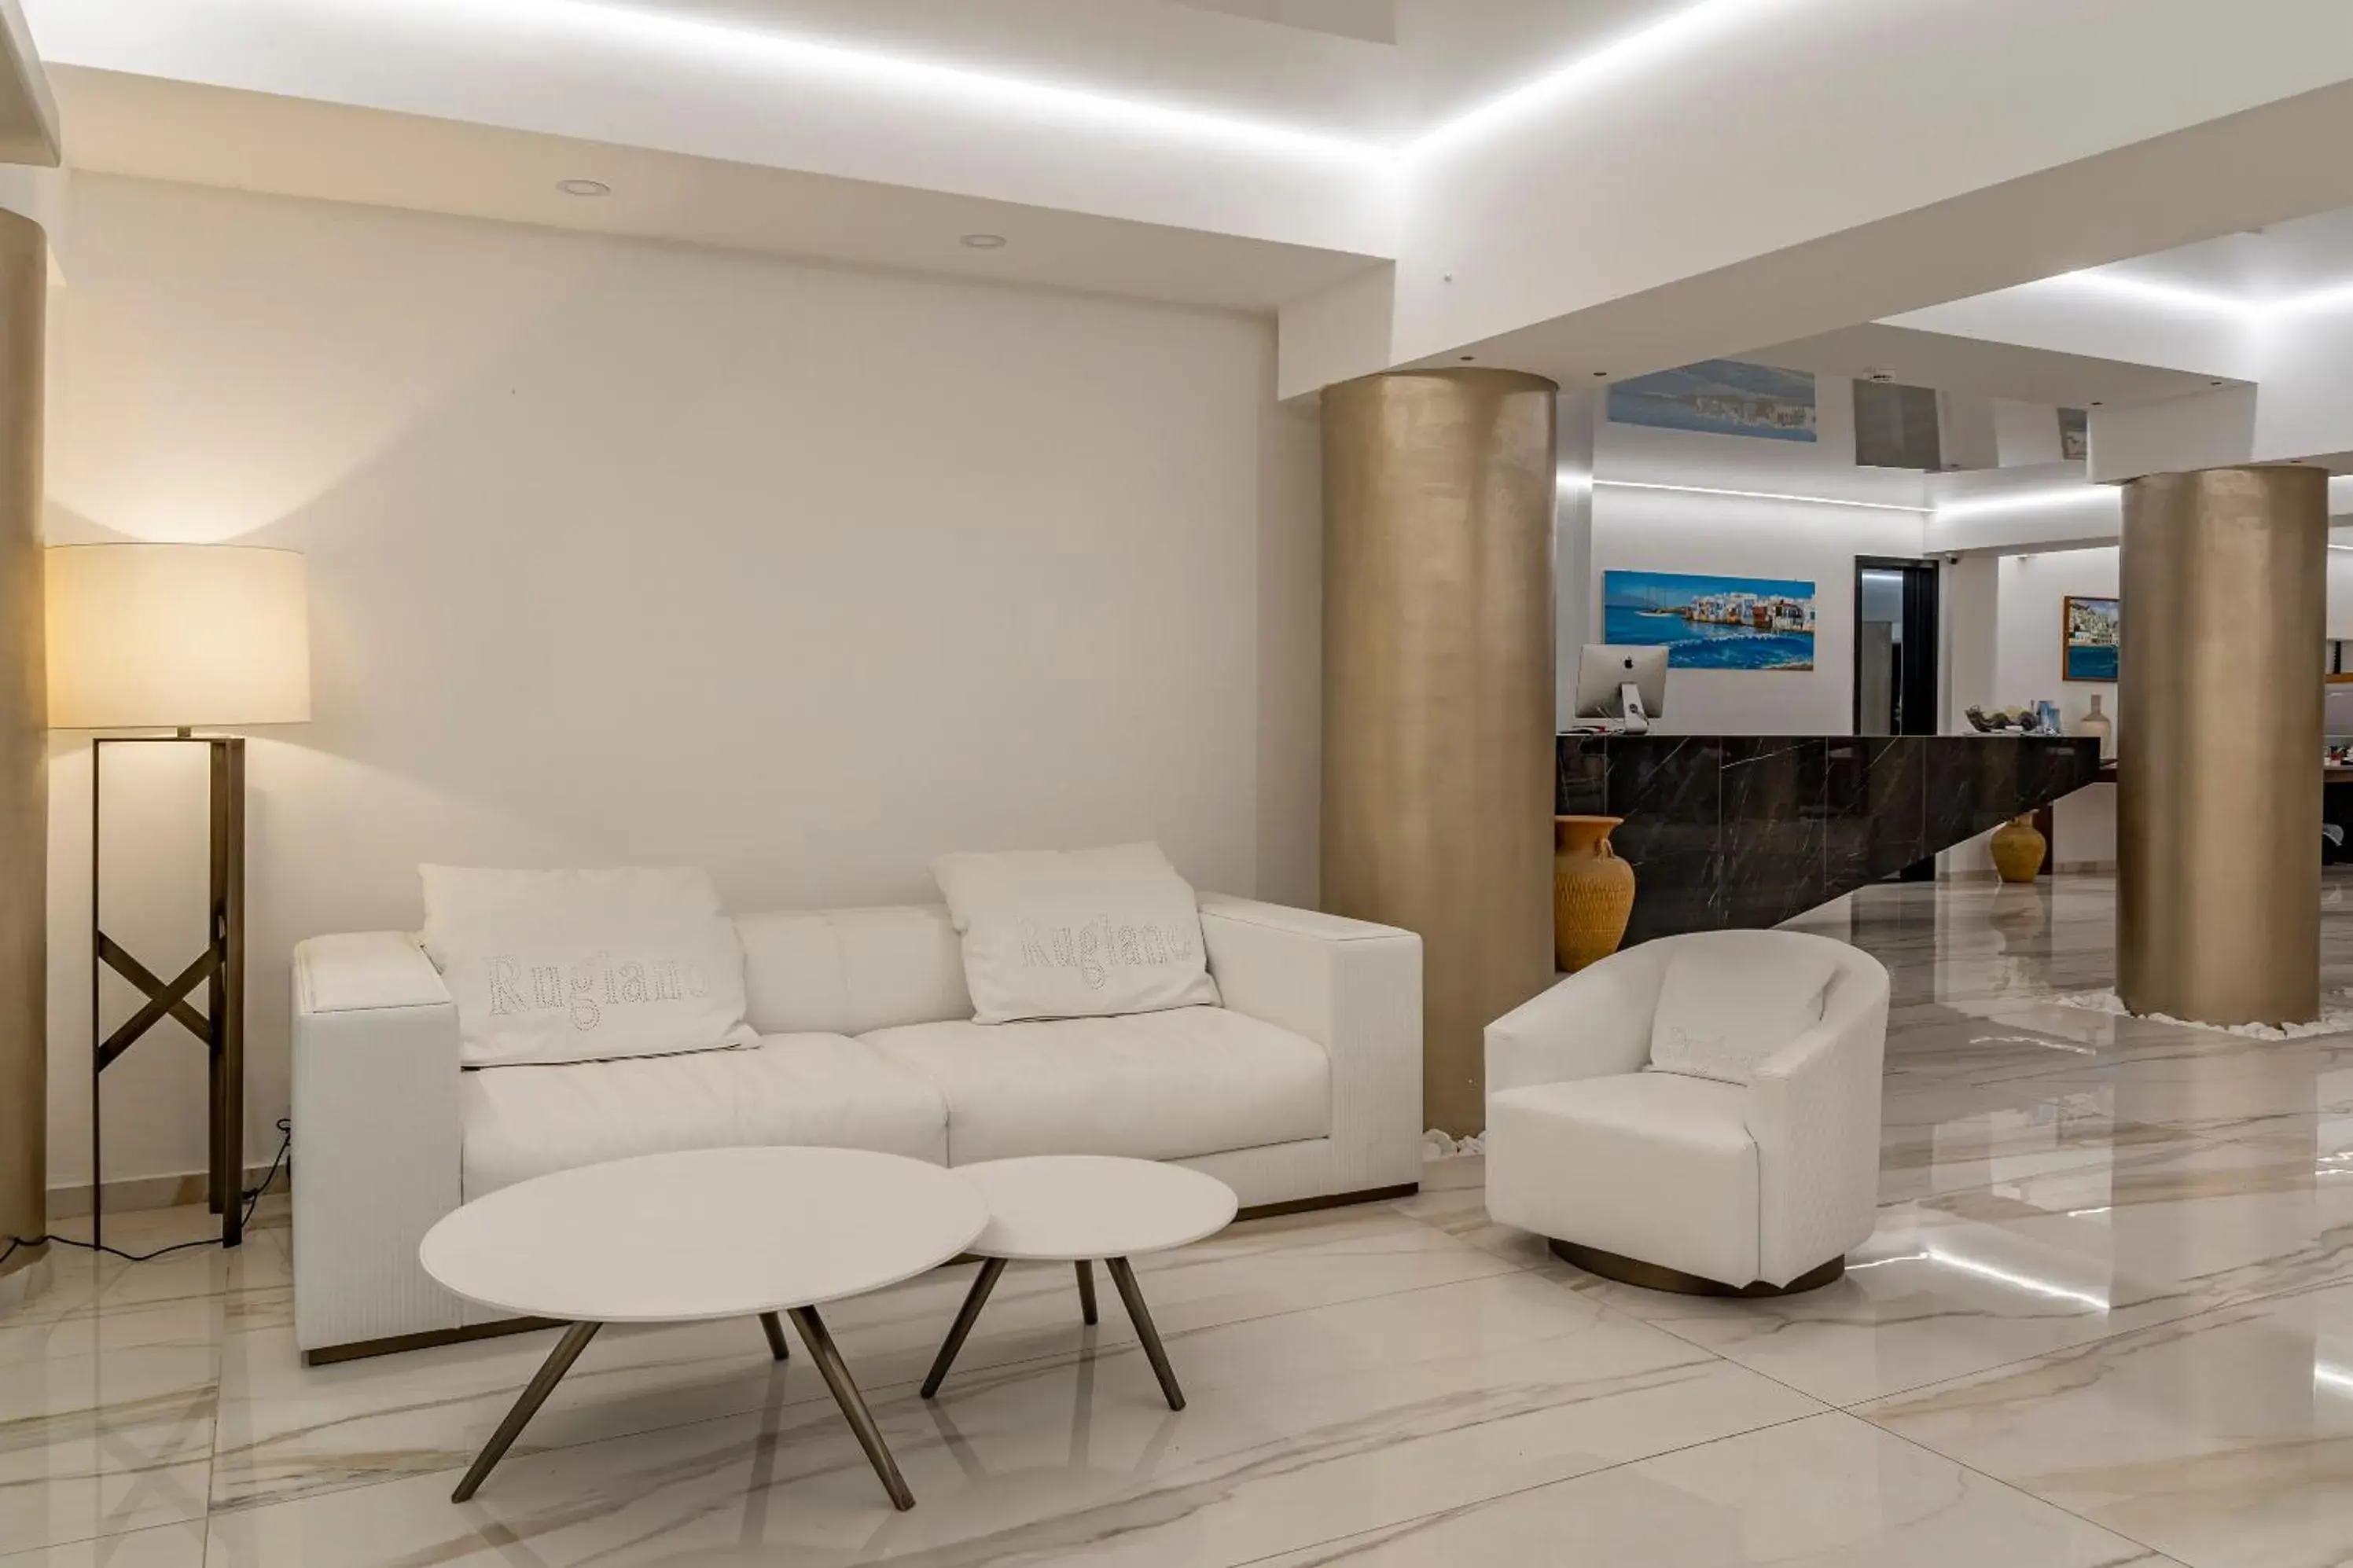 Lobby or reception in Dionysos Hotel